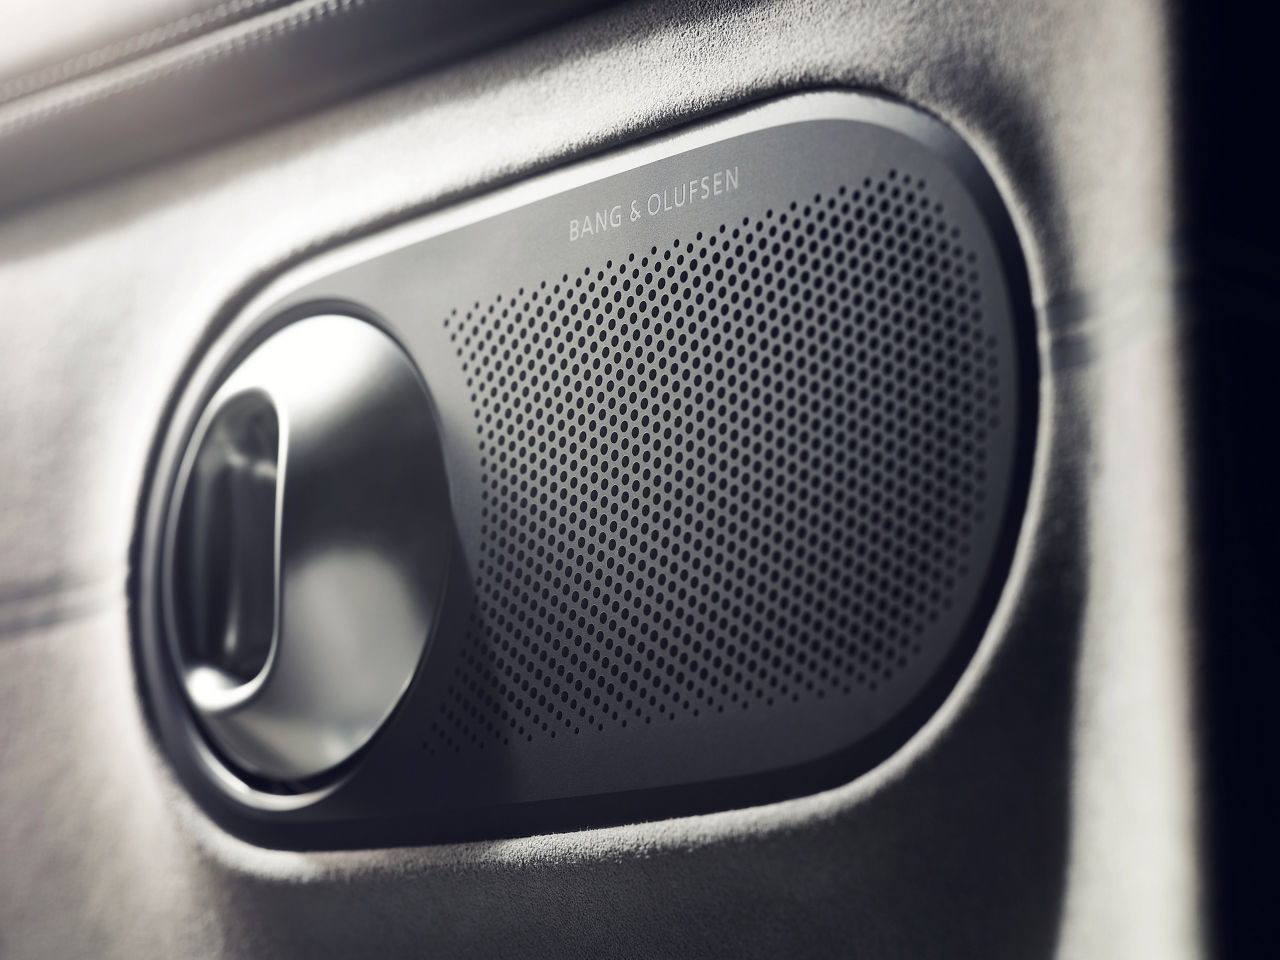 Speaker in a car